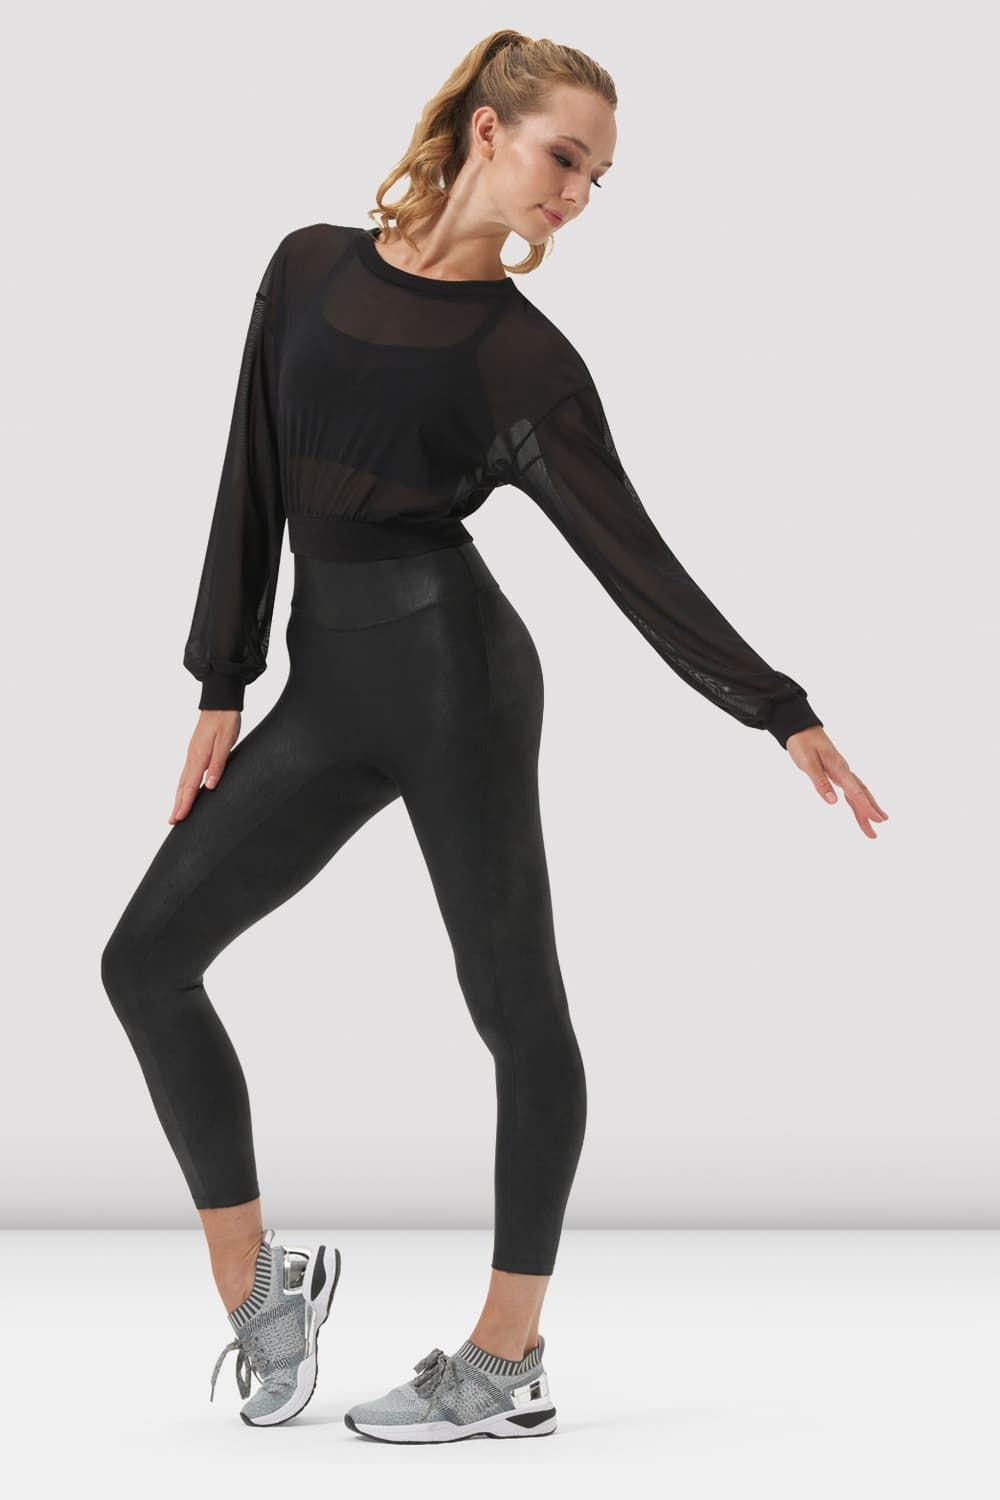 Ladies Remi Mesh Long Sleeve Top, Black – BLOCH Dance US